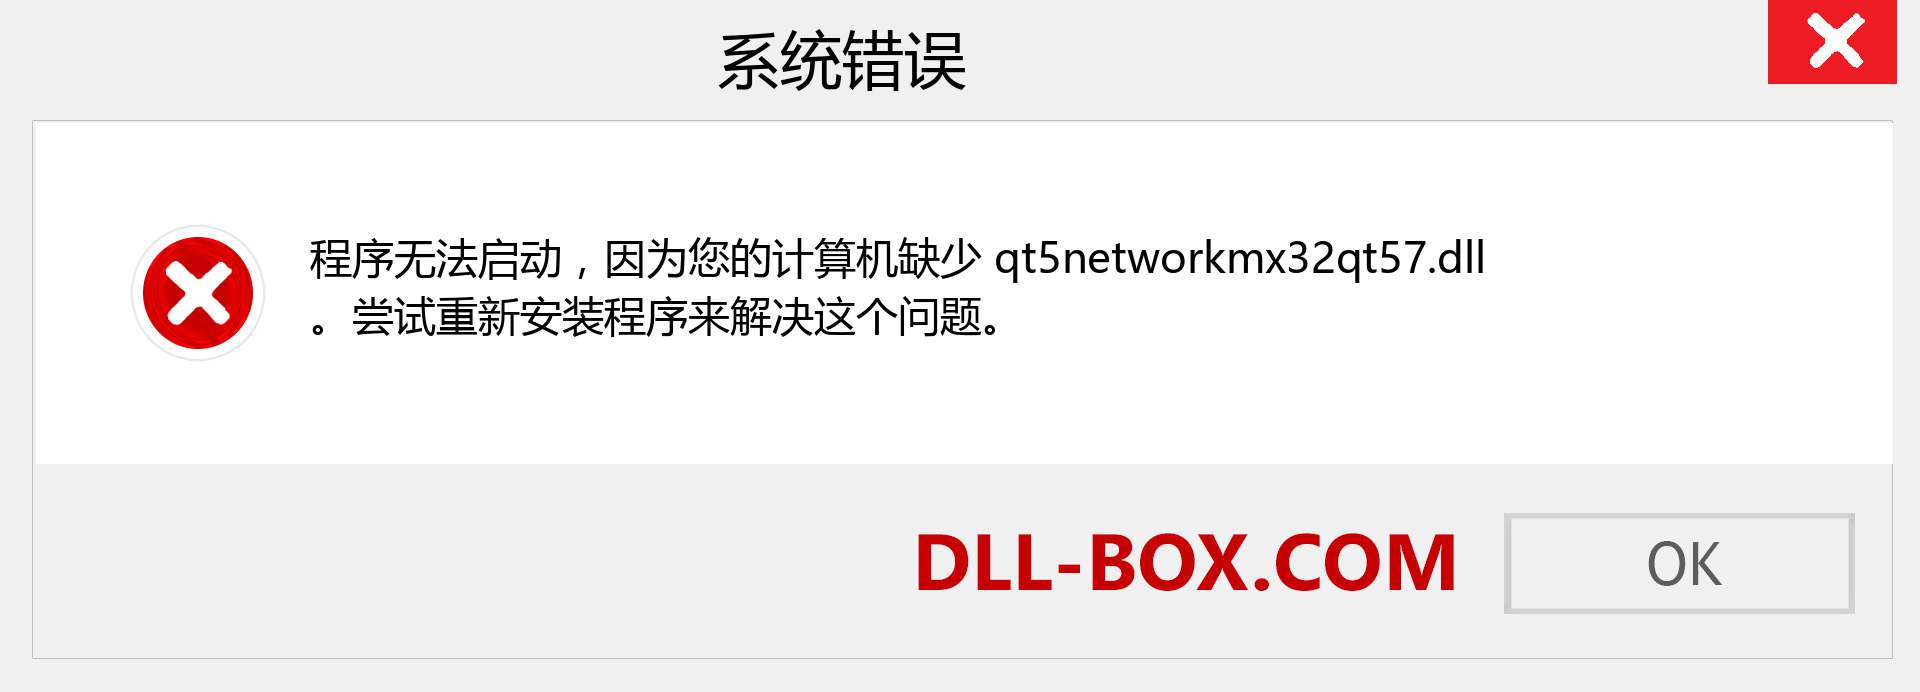 qt5networkmx32qt57.dll 文件丢失？。 适用于 Windows 7、8、10 的下载 - 修复 Windows、照片、图像上的 qt5networkmx32qt57 dll 丢失错误